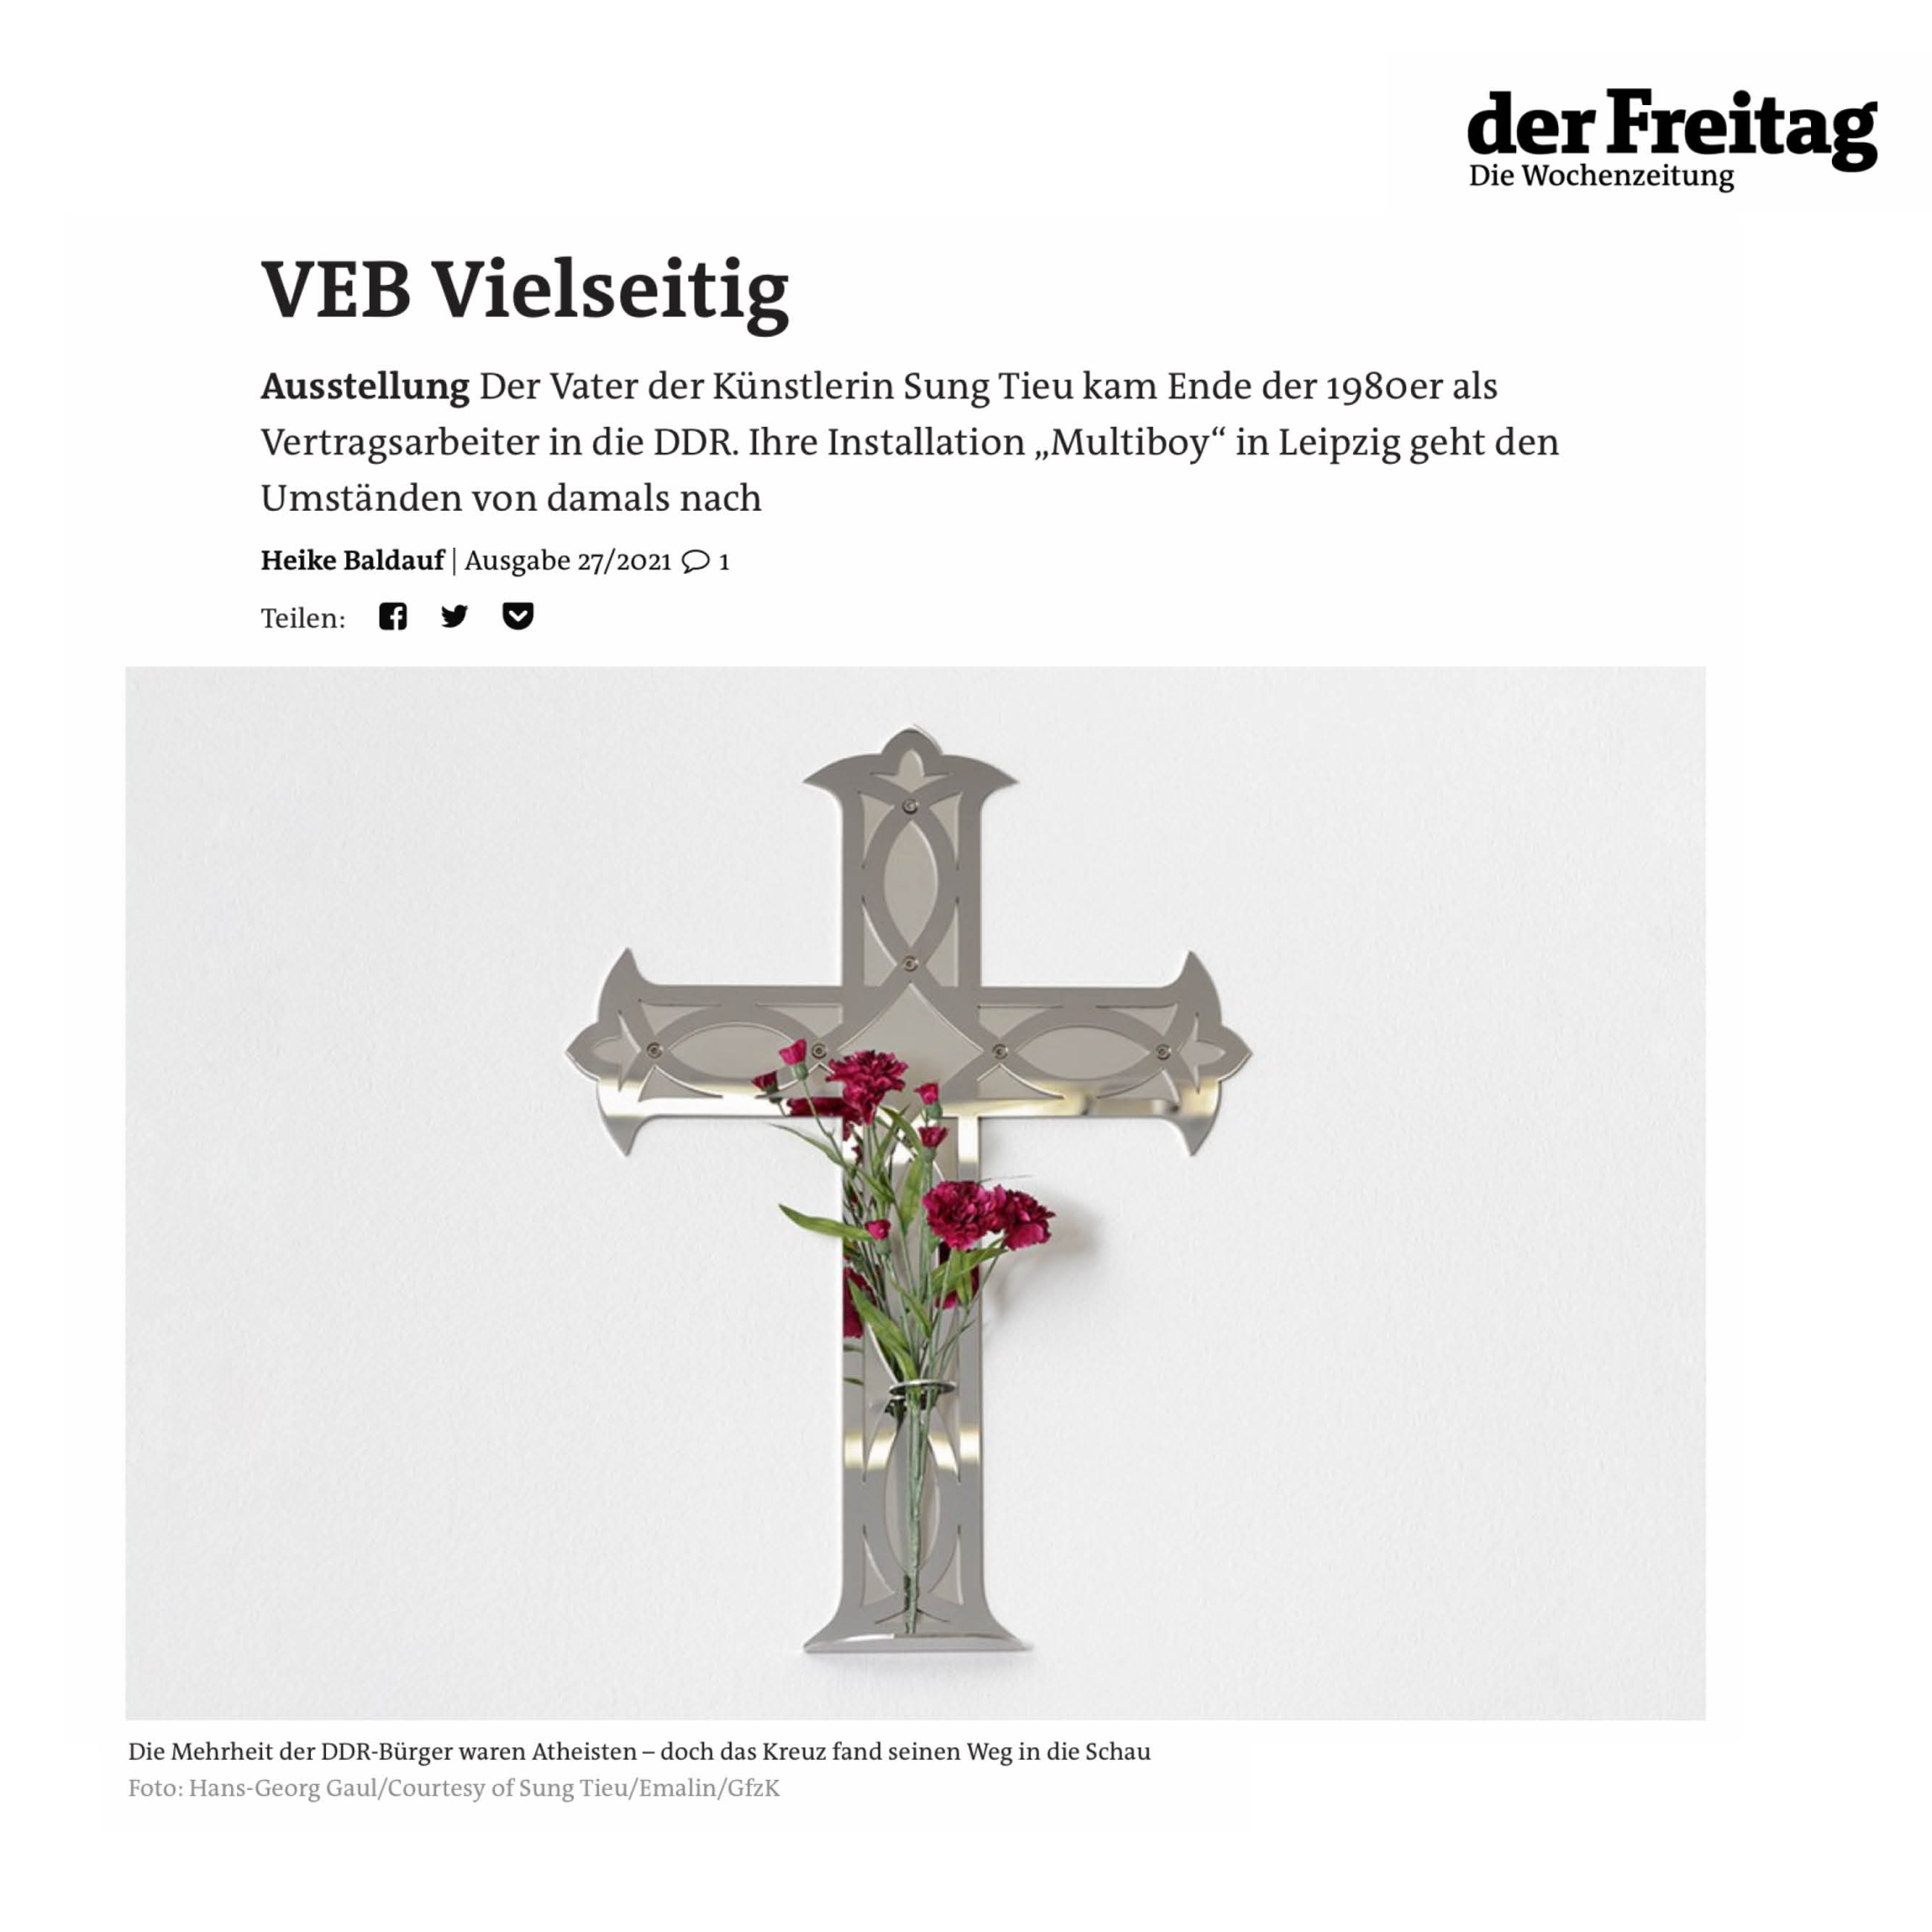 In "VEB Vielseitig" Heike Baldauf writes about Sung Tieu's exhibition "Multiboy" | Der Freitag Wochenzeitung, 27/2021